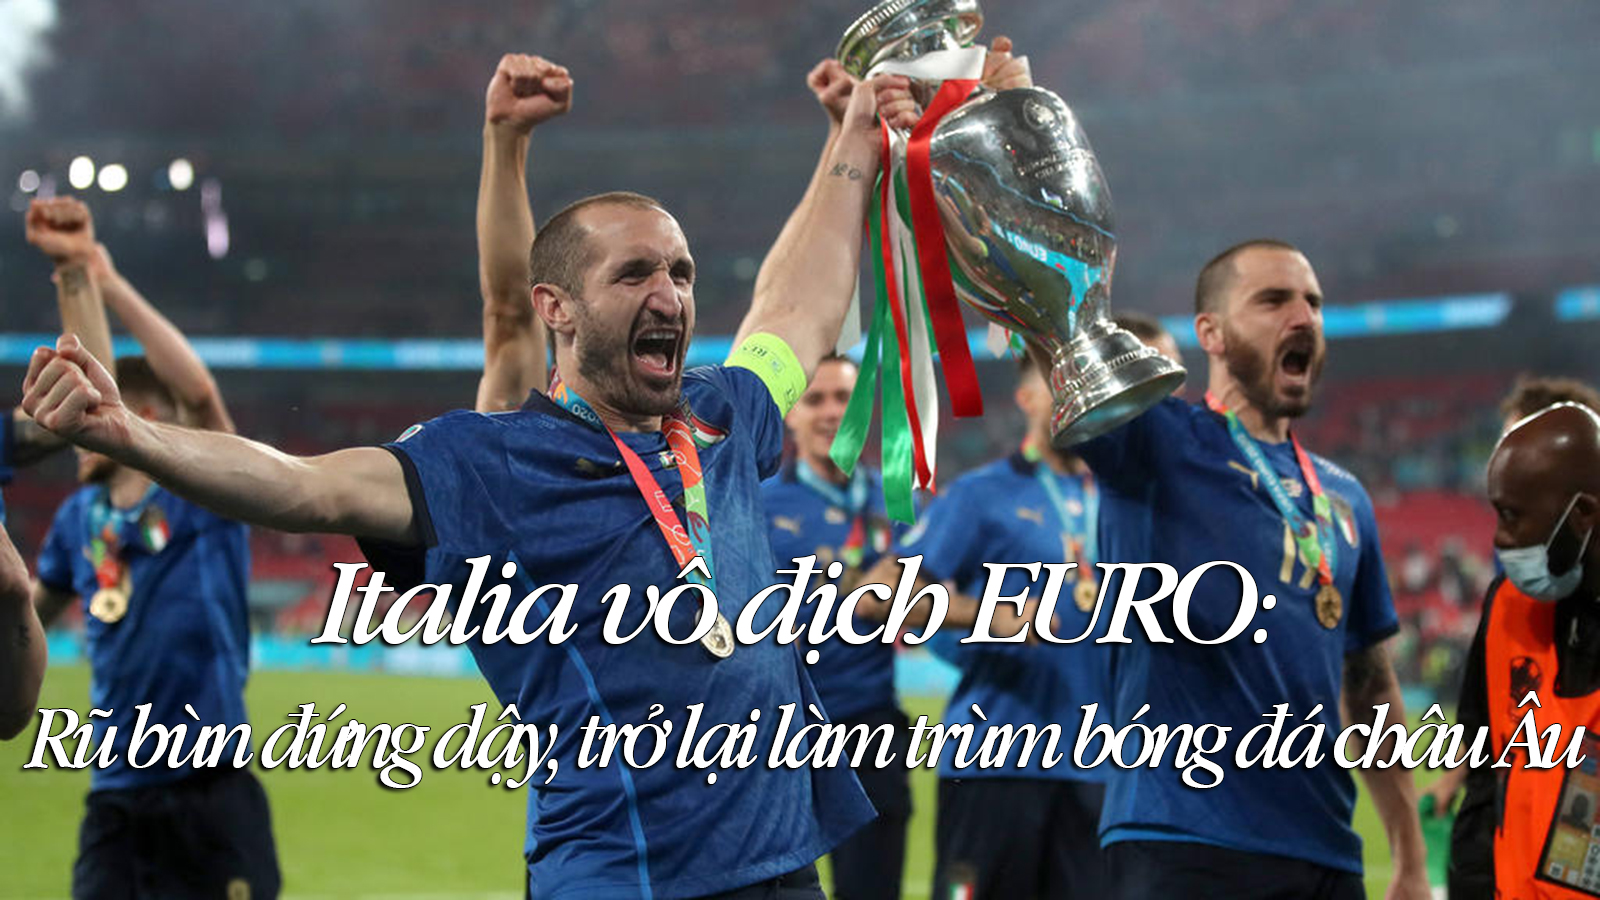 Italia vô địch EURO: Rũ bùn đứng dậy, trở lại làm trùm bóng đá châu Âu - 1